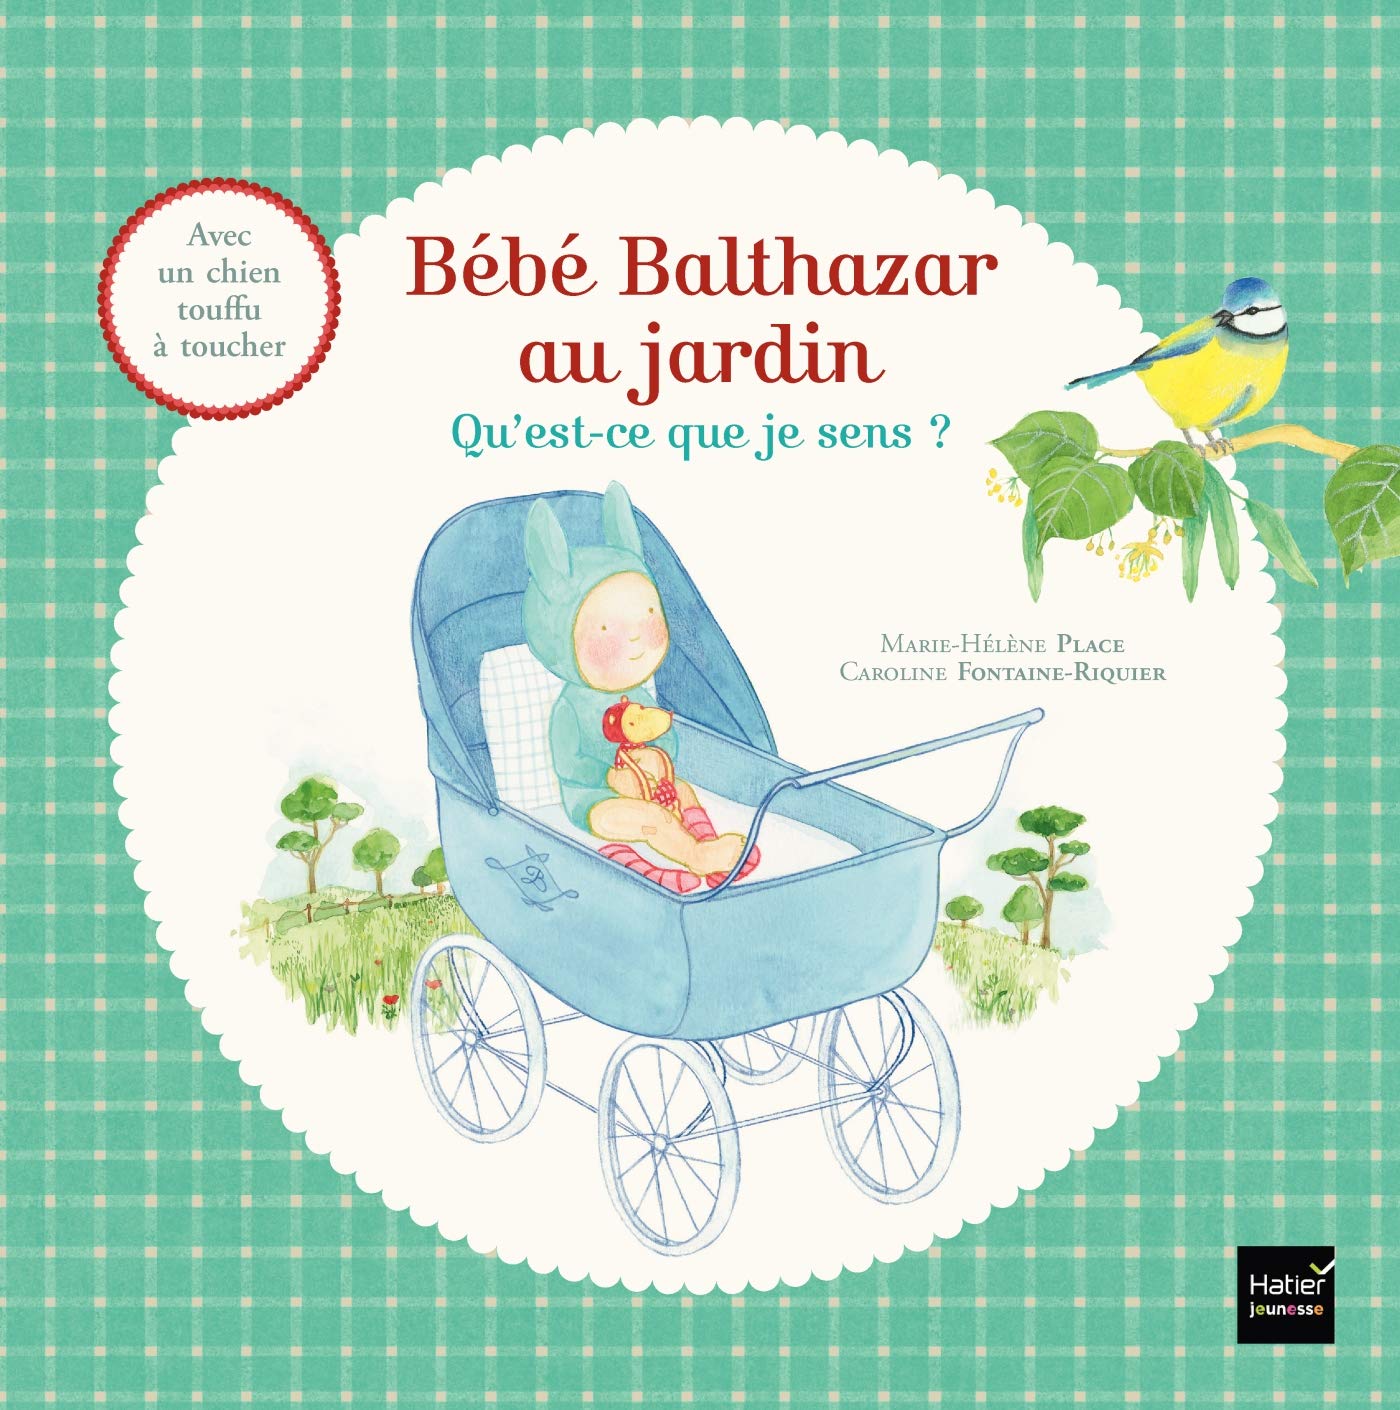 Les livres Bébé Balthazar issus de la pédagogie Montessori